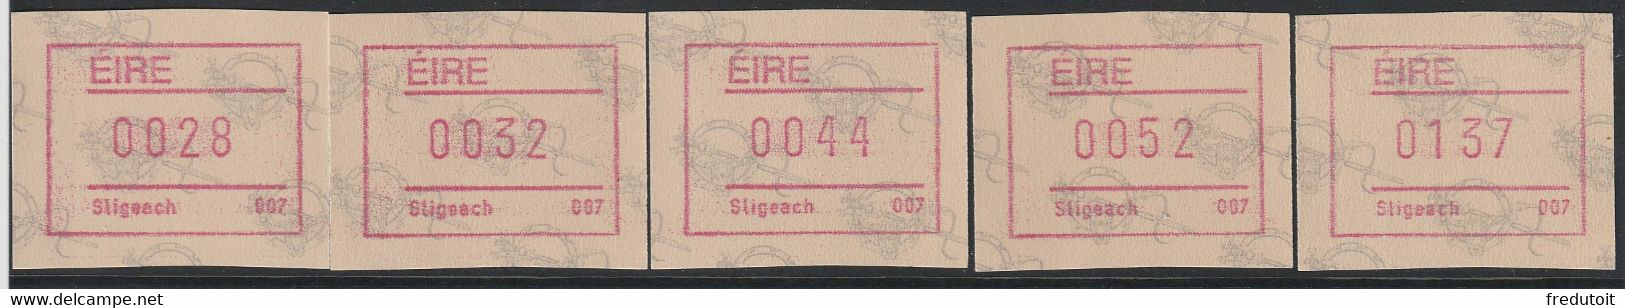 IRLANDE - Timbres Distributeurs / FRAMA  ATM - N°4** (1992) Sligeach 007 - Viñetas De Franqueo (Frama)